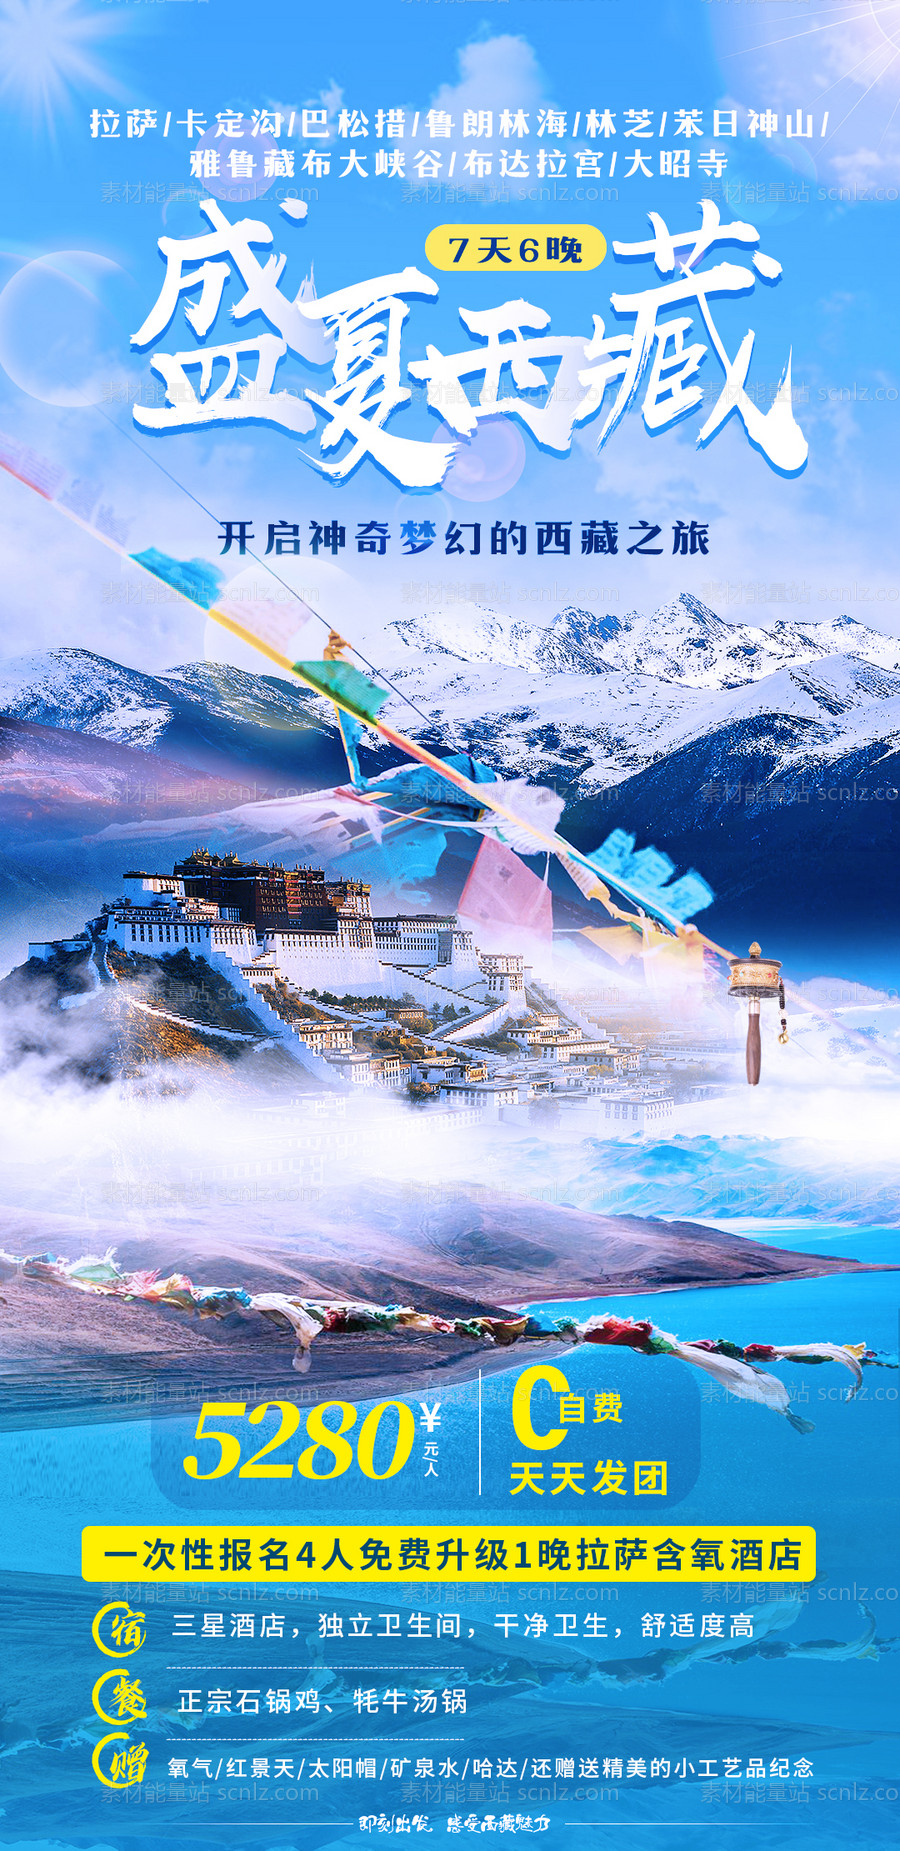 素材能量站-盛夏西藏